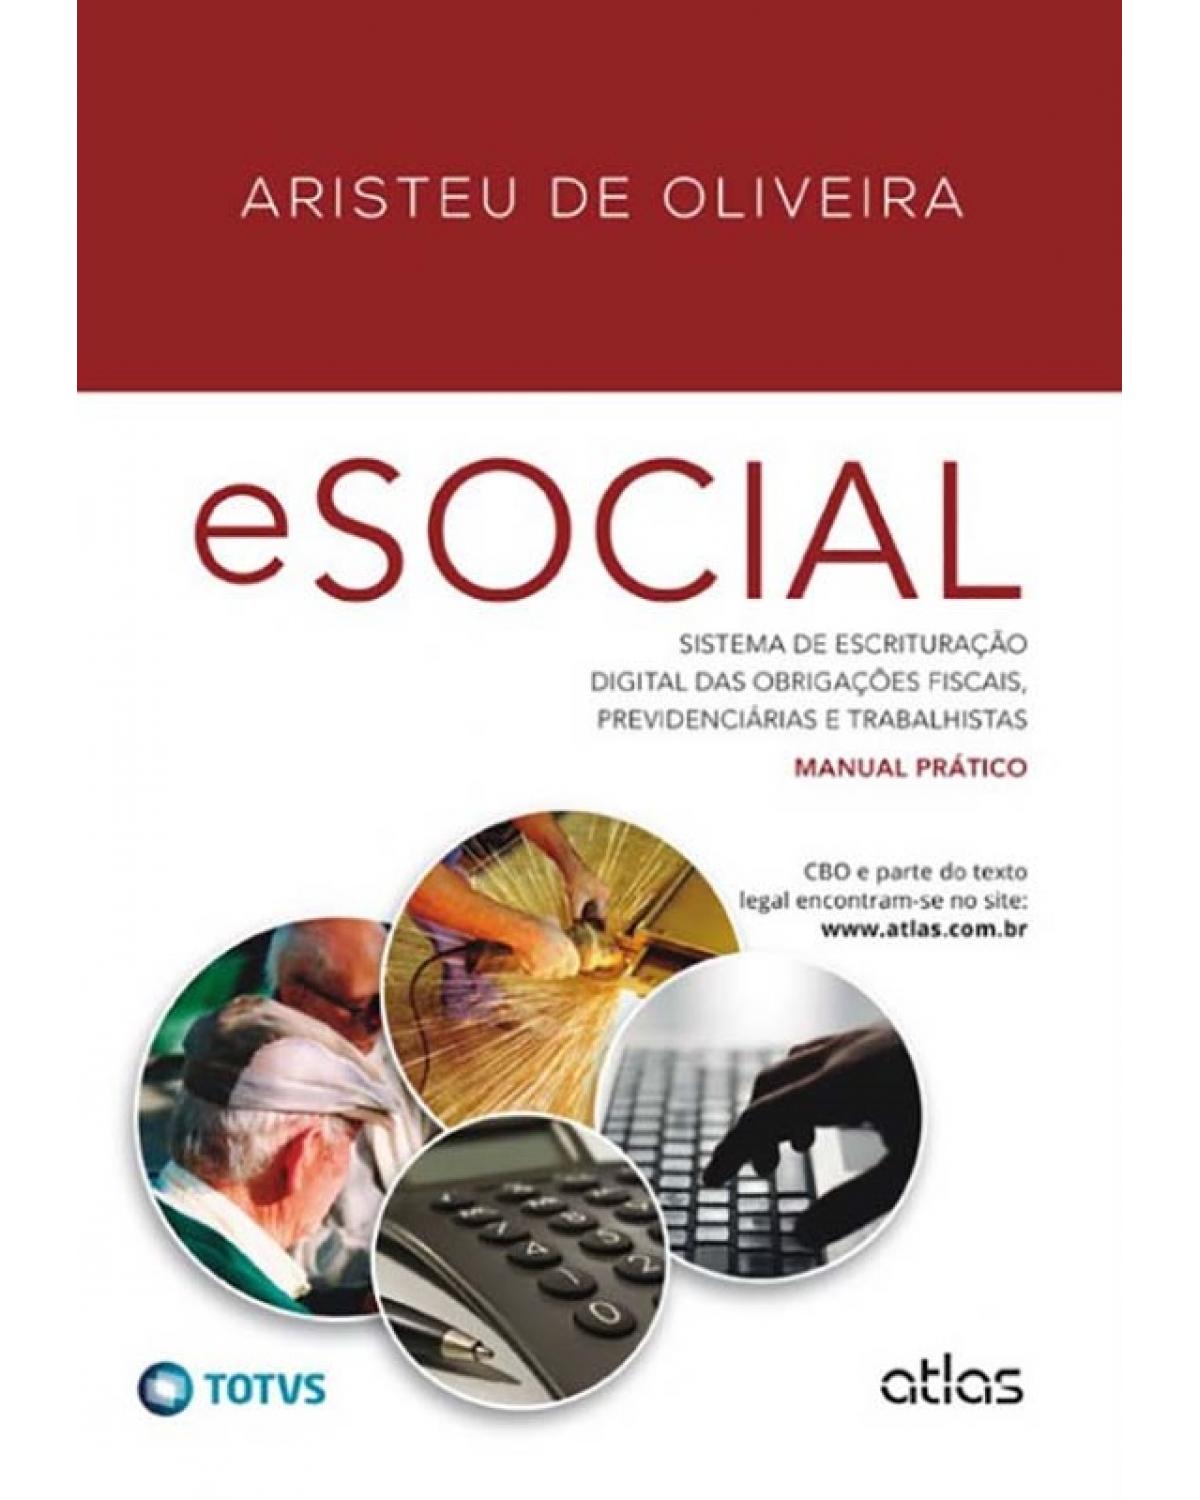 eSocial - Sistema de escrituração digital das obrigações fiscais, previdenciárias e trabalhistas: Manual prático - 1ª Edição | 2014